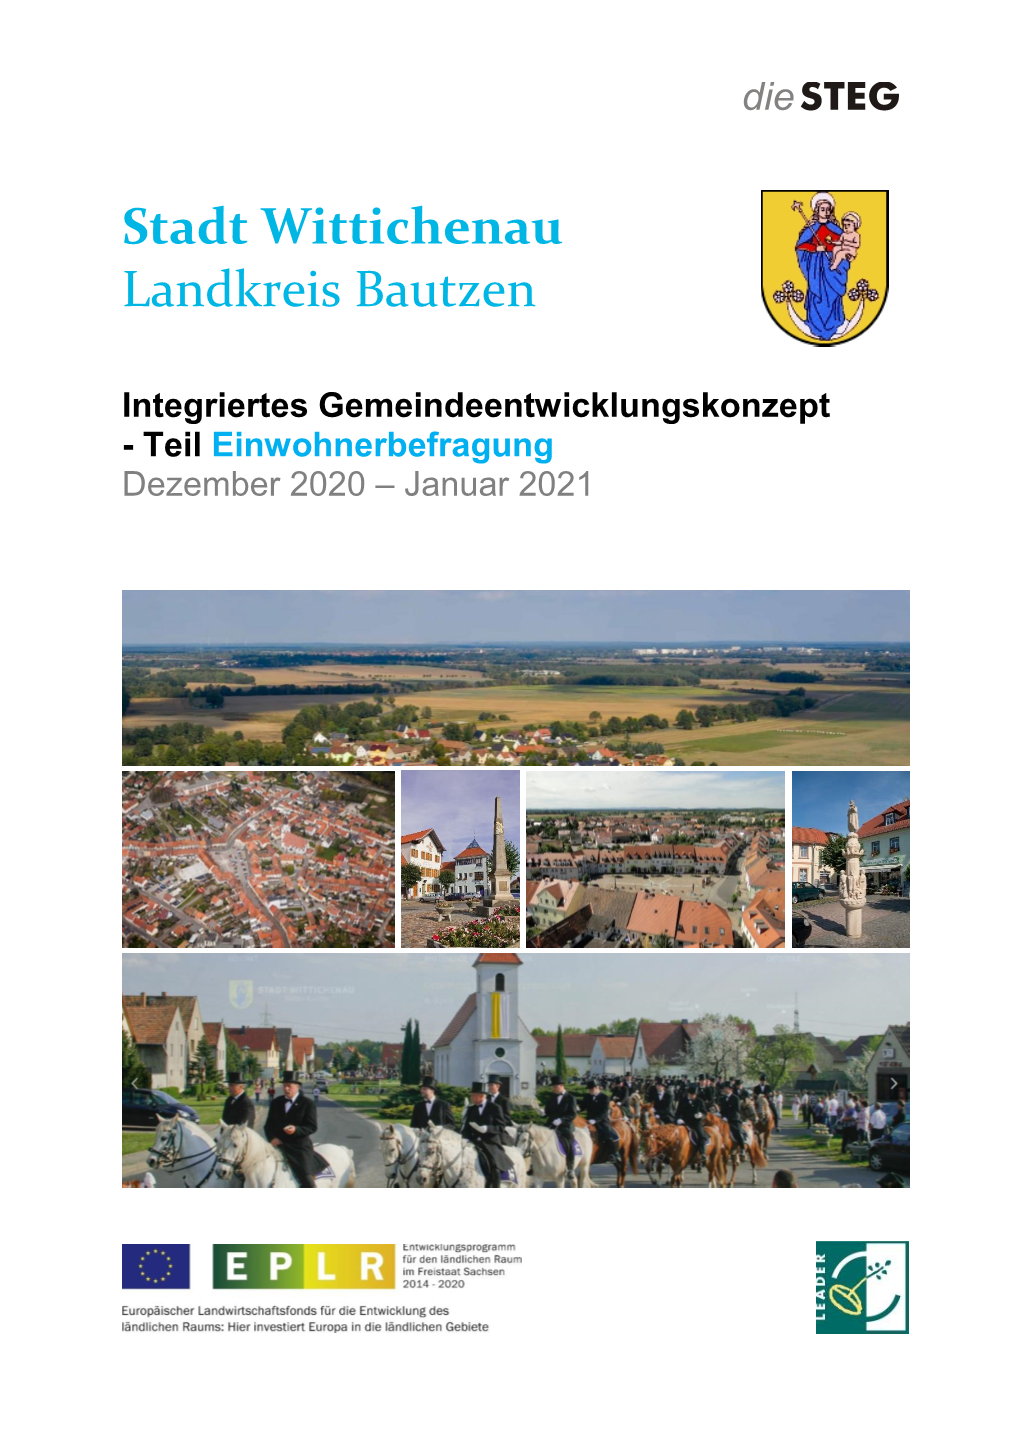 Stadt Wittichenau Landkreis Bautzen